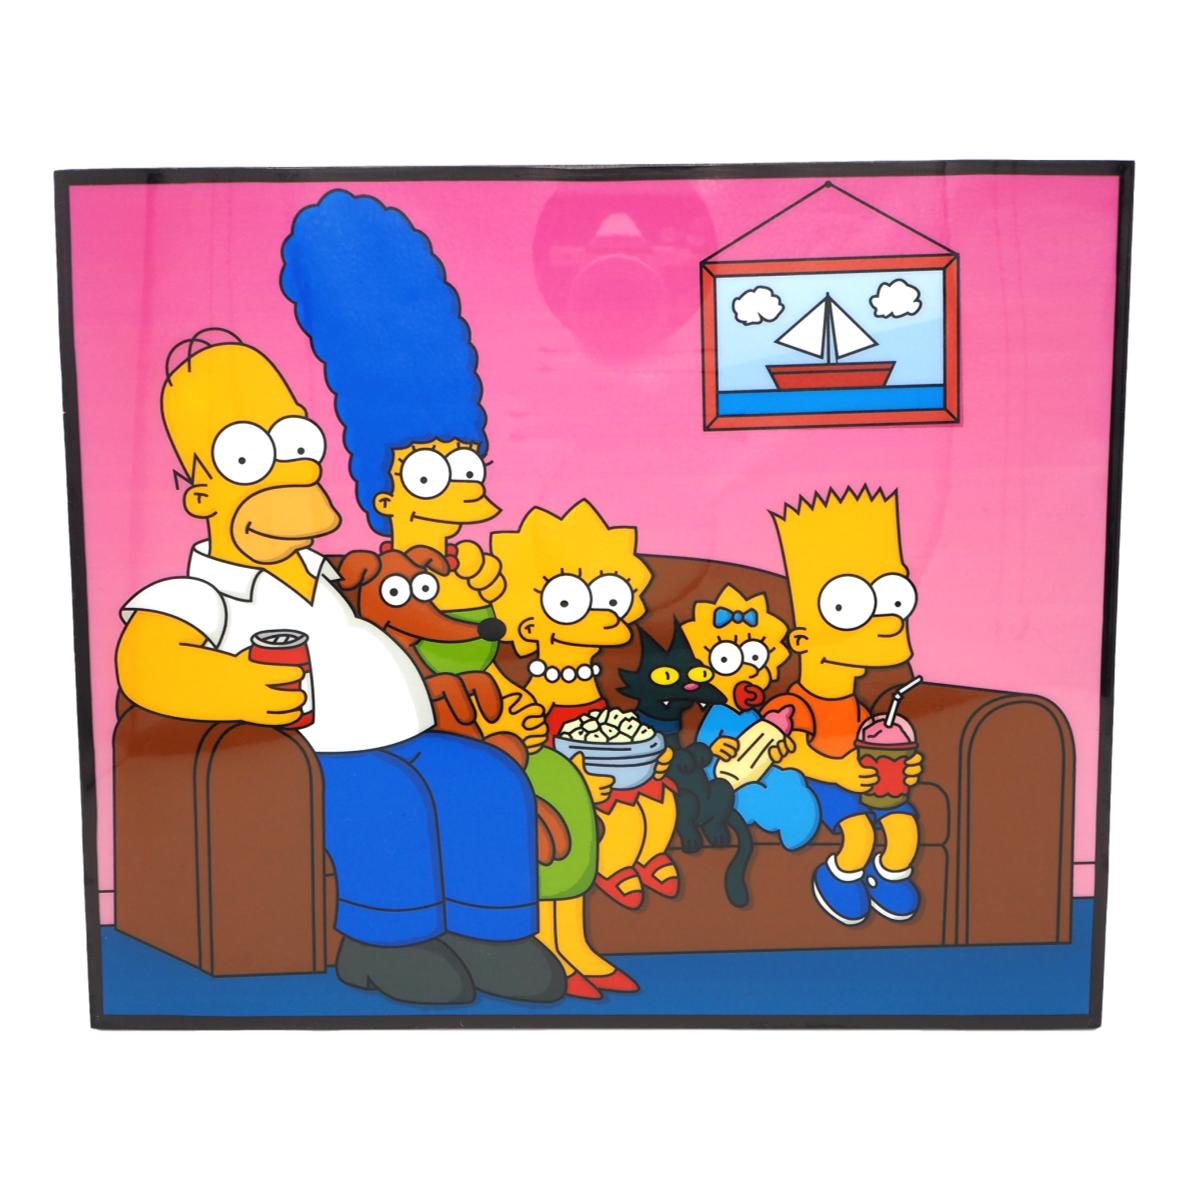 楽天市場 ザ シンプソンズ The Simpsons ポスター アメリカ ンなポスターが勢揃い お部屋をカスタムしちゃいましょう 新商品 大人気 ａｏｉデパート